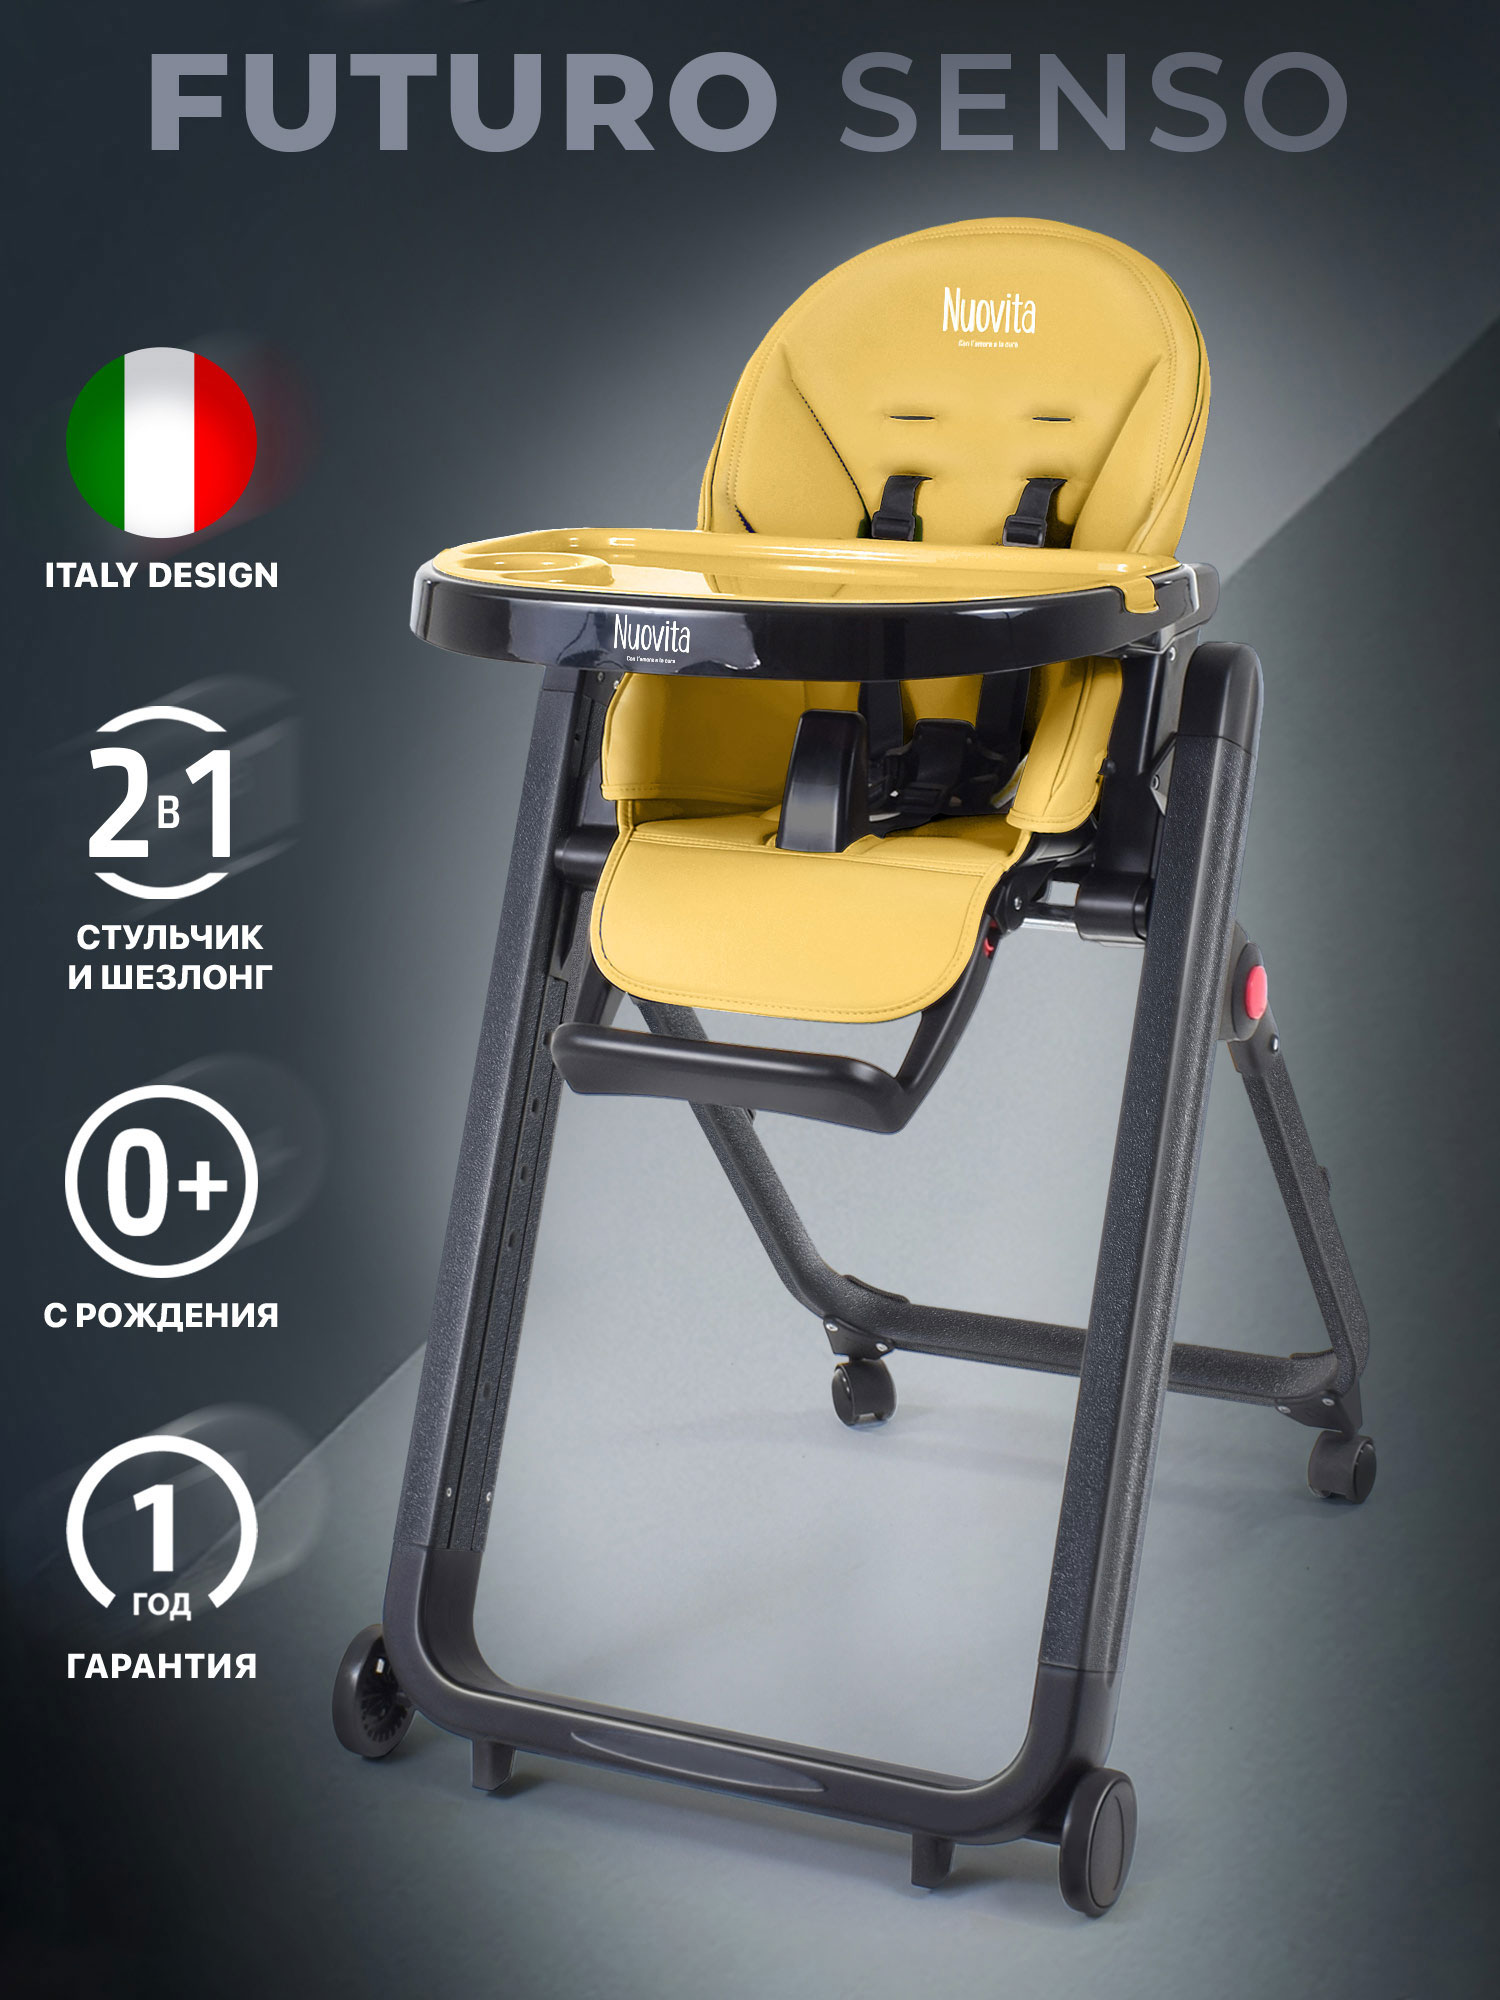 Стульчик для кормления Nuovita Futuro Senso Nero (Giallo/Желтый) стульчик для кормления nuovita futuro nero cremisi малиновый